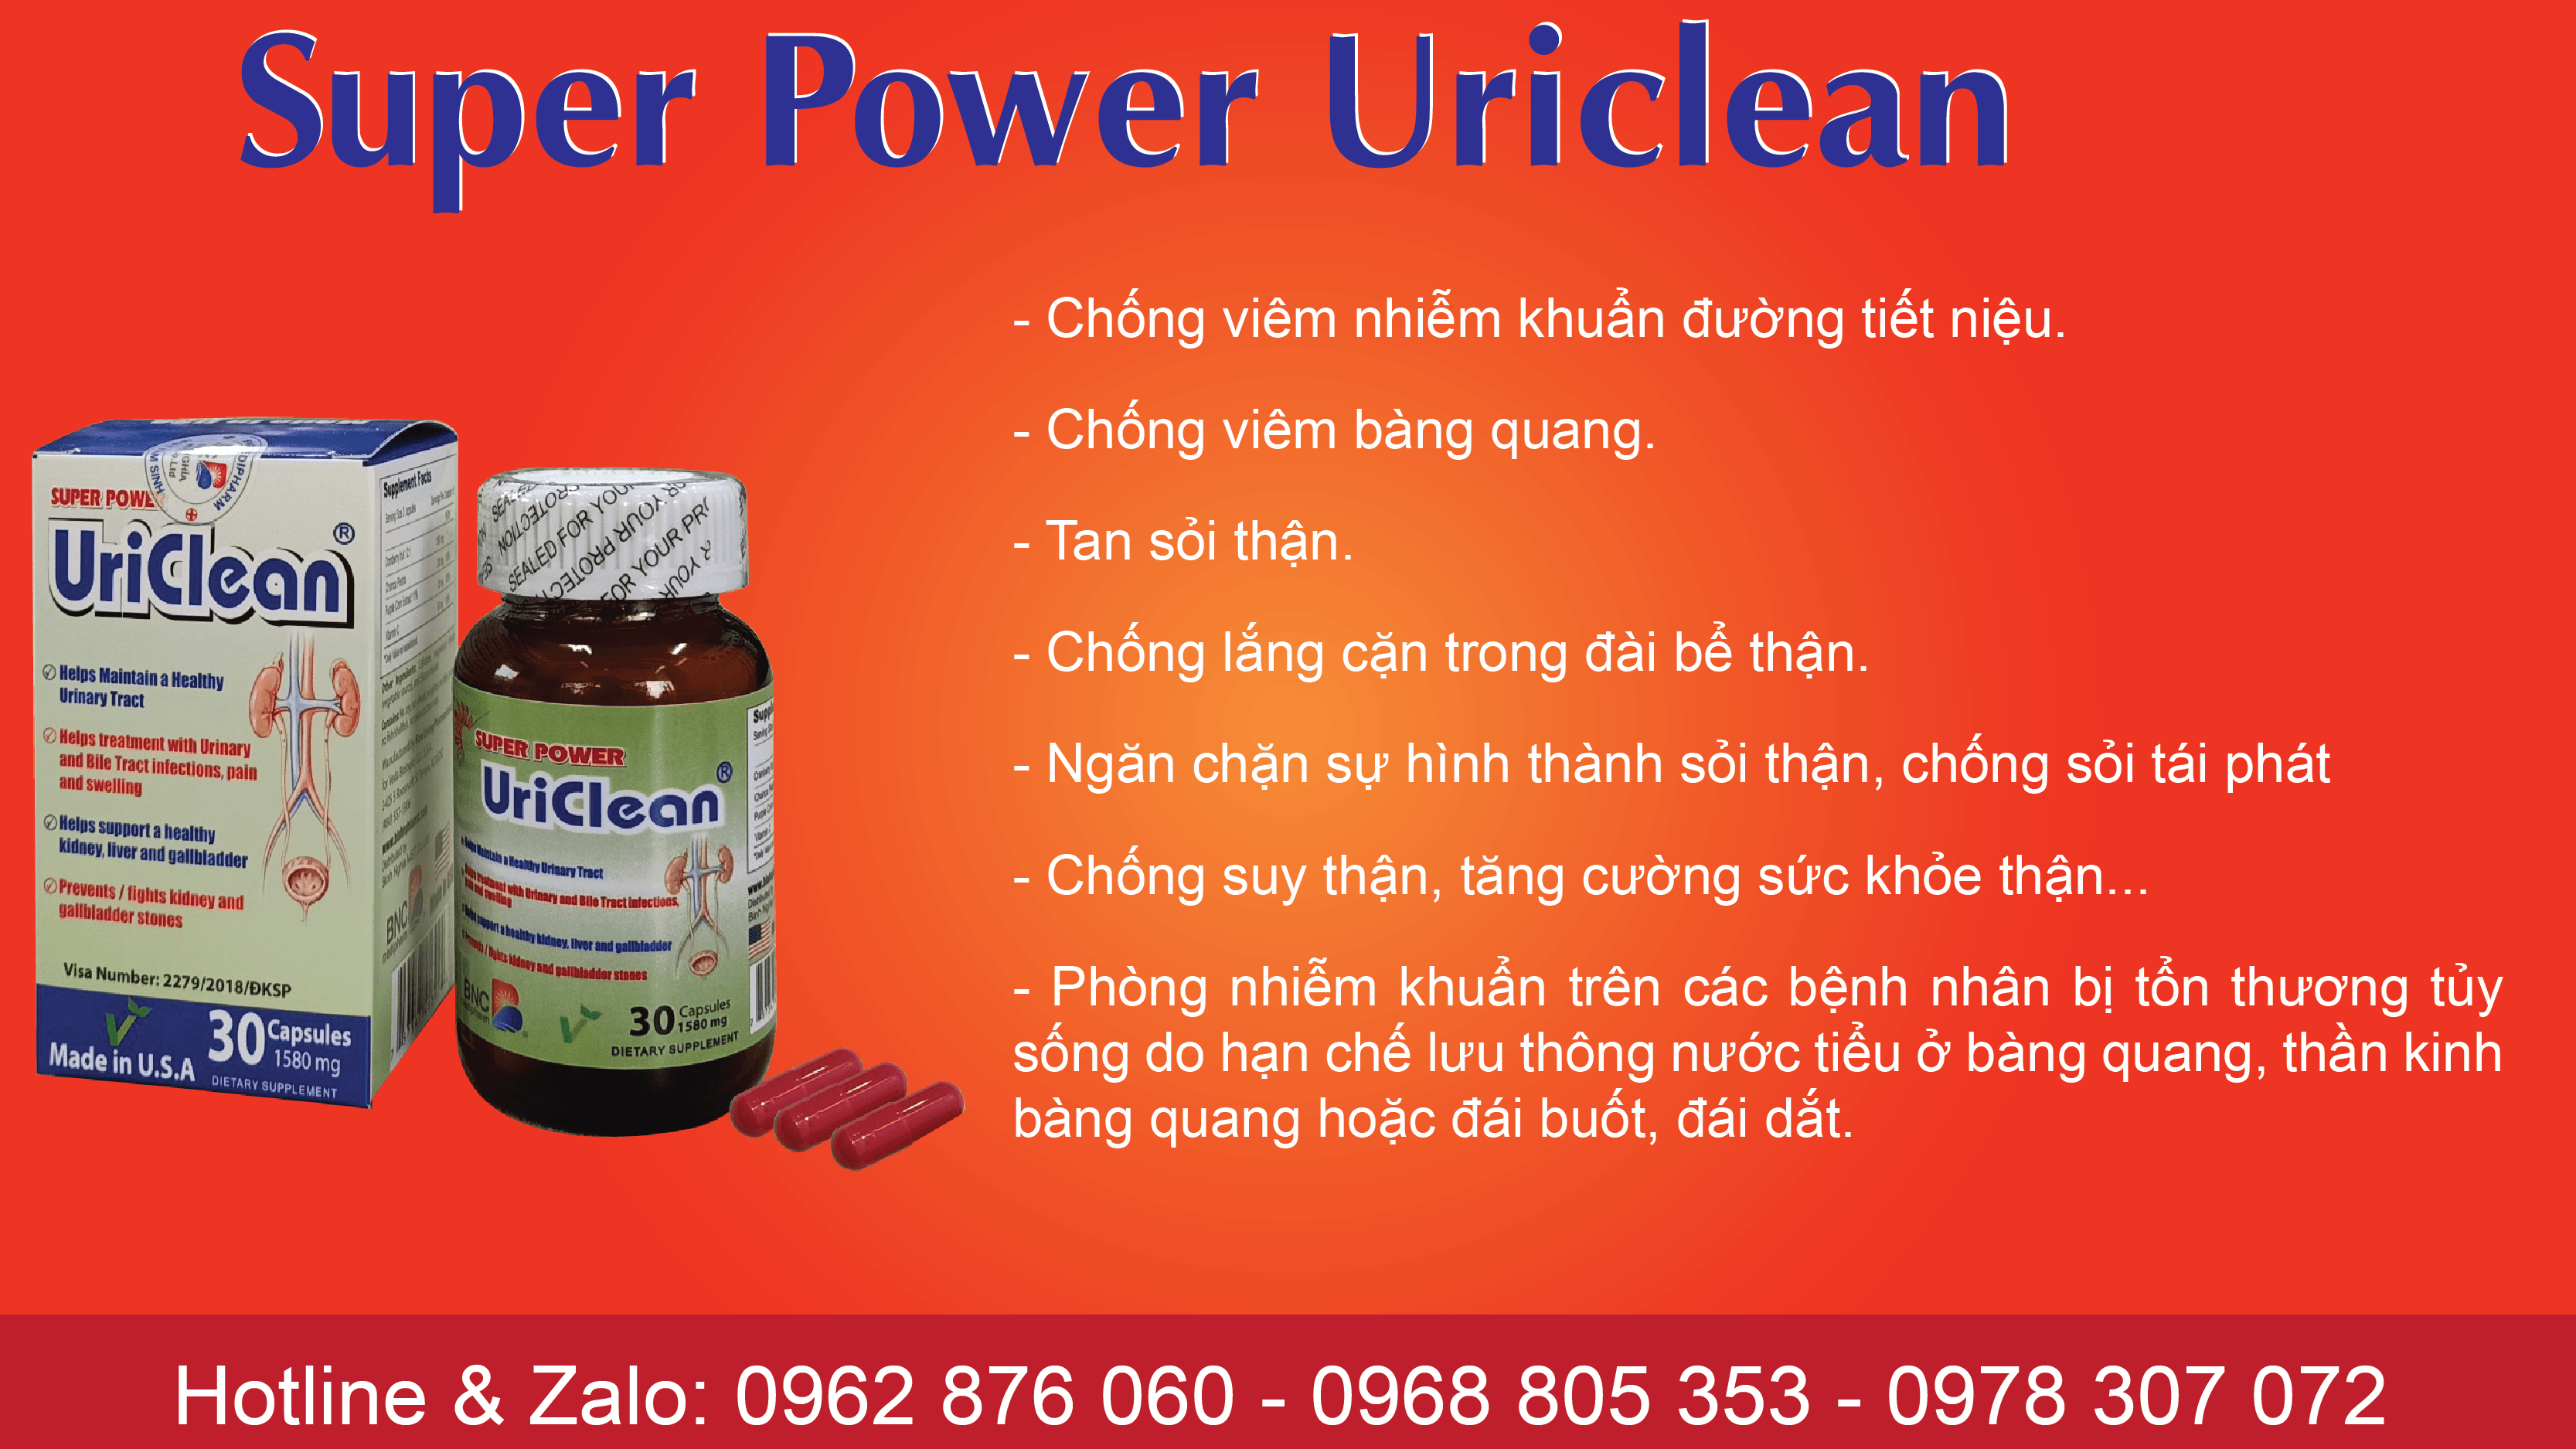 Super power uriclean